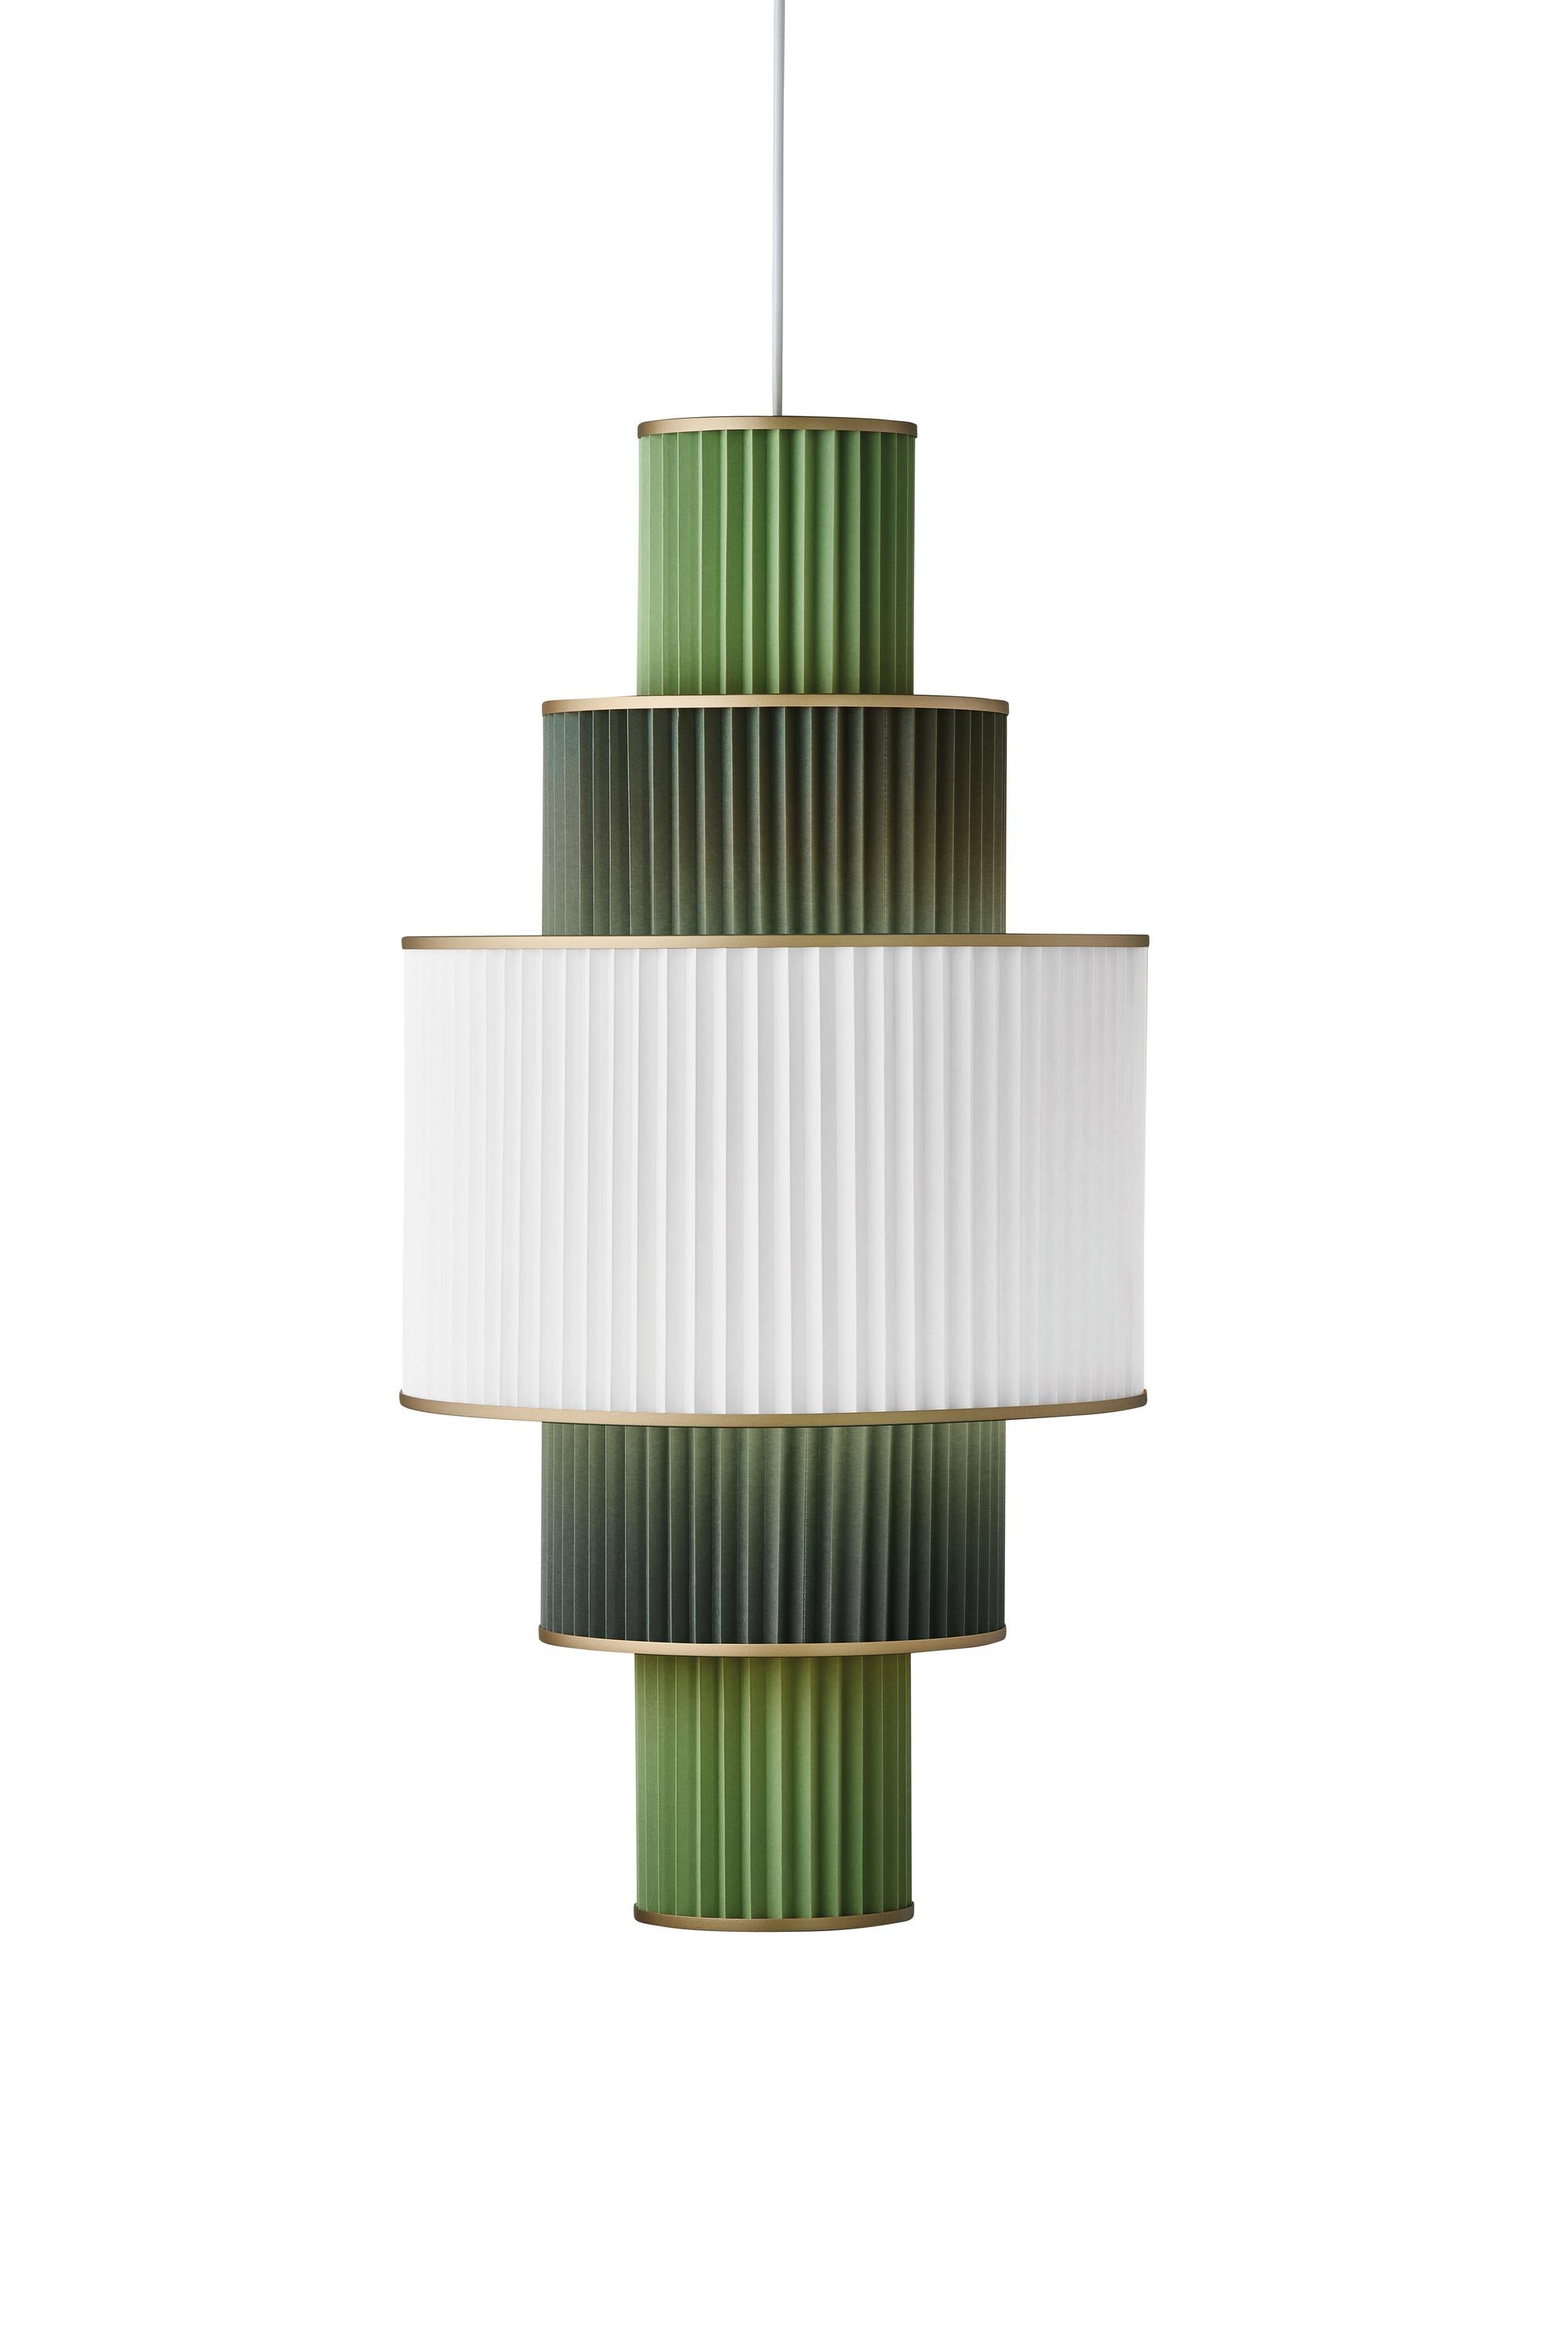 Le Klint Plivello -ophængslamp Gylden/hvid/lysegrøn med 5 nuancer (S M L M S)